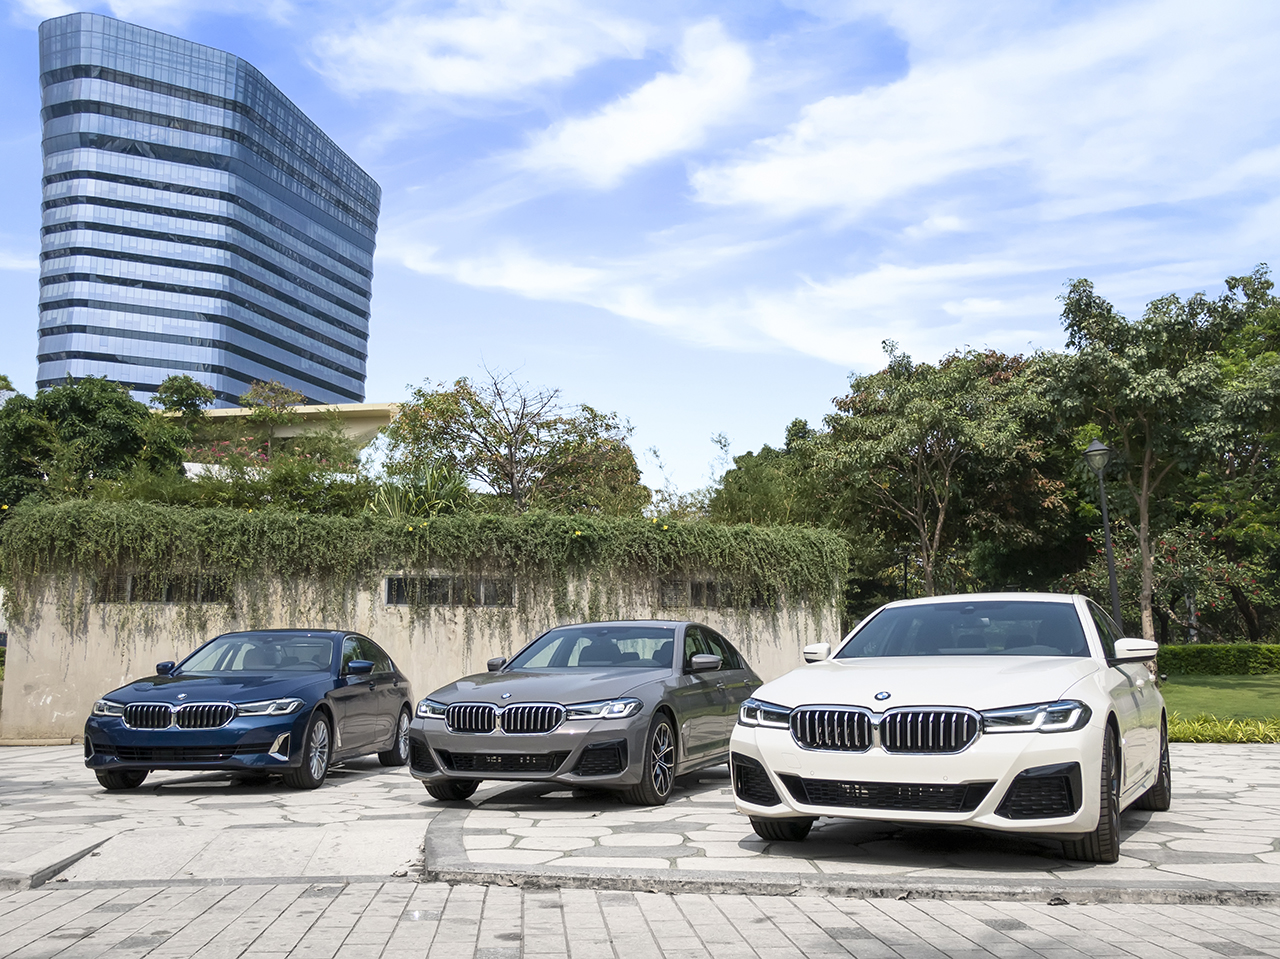 Cả 3 thương hiệu được tập đoàn BMW phân phối đều đặt mức tăng trưởng cao trong quý 1.2021